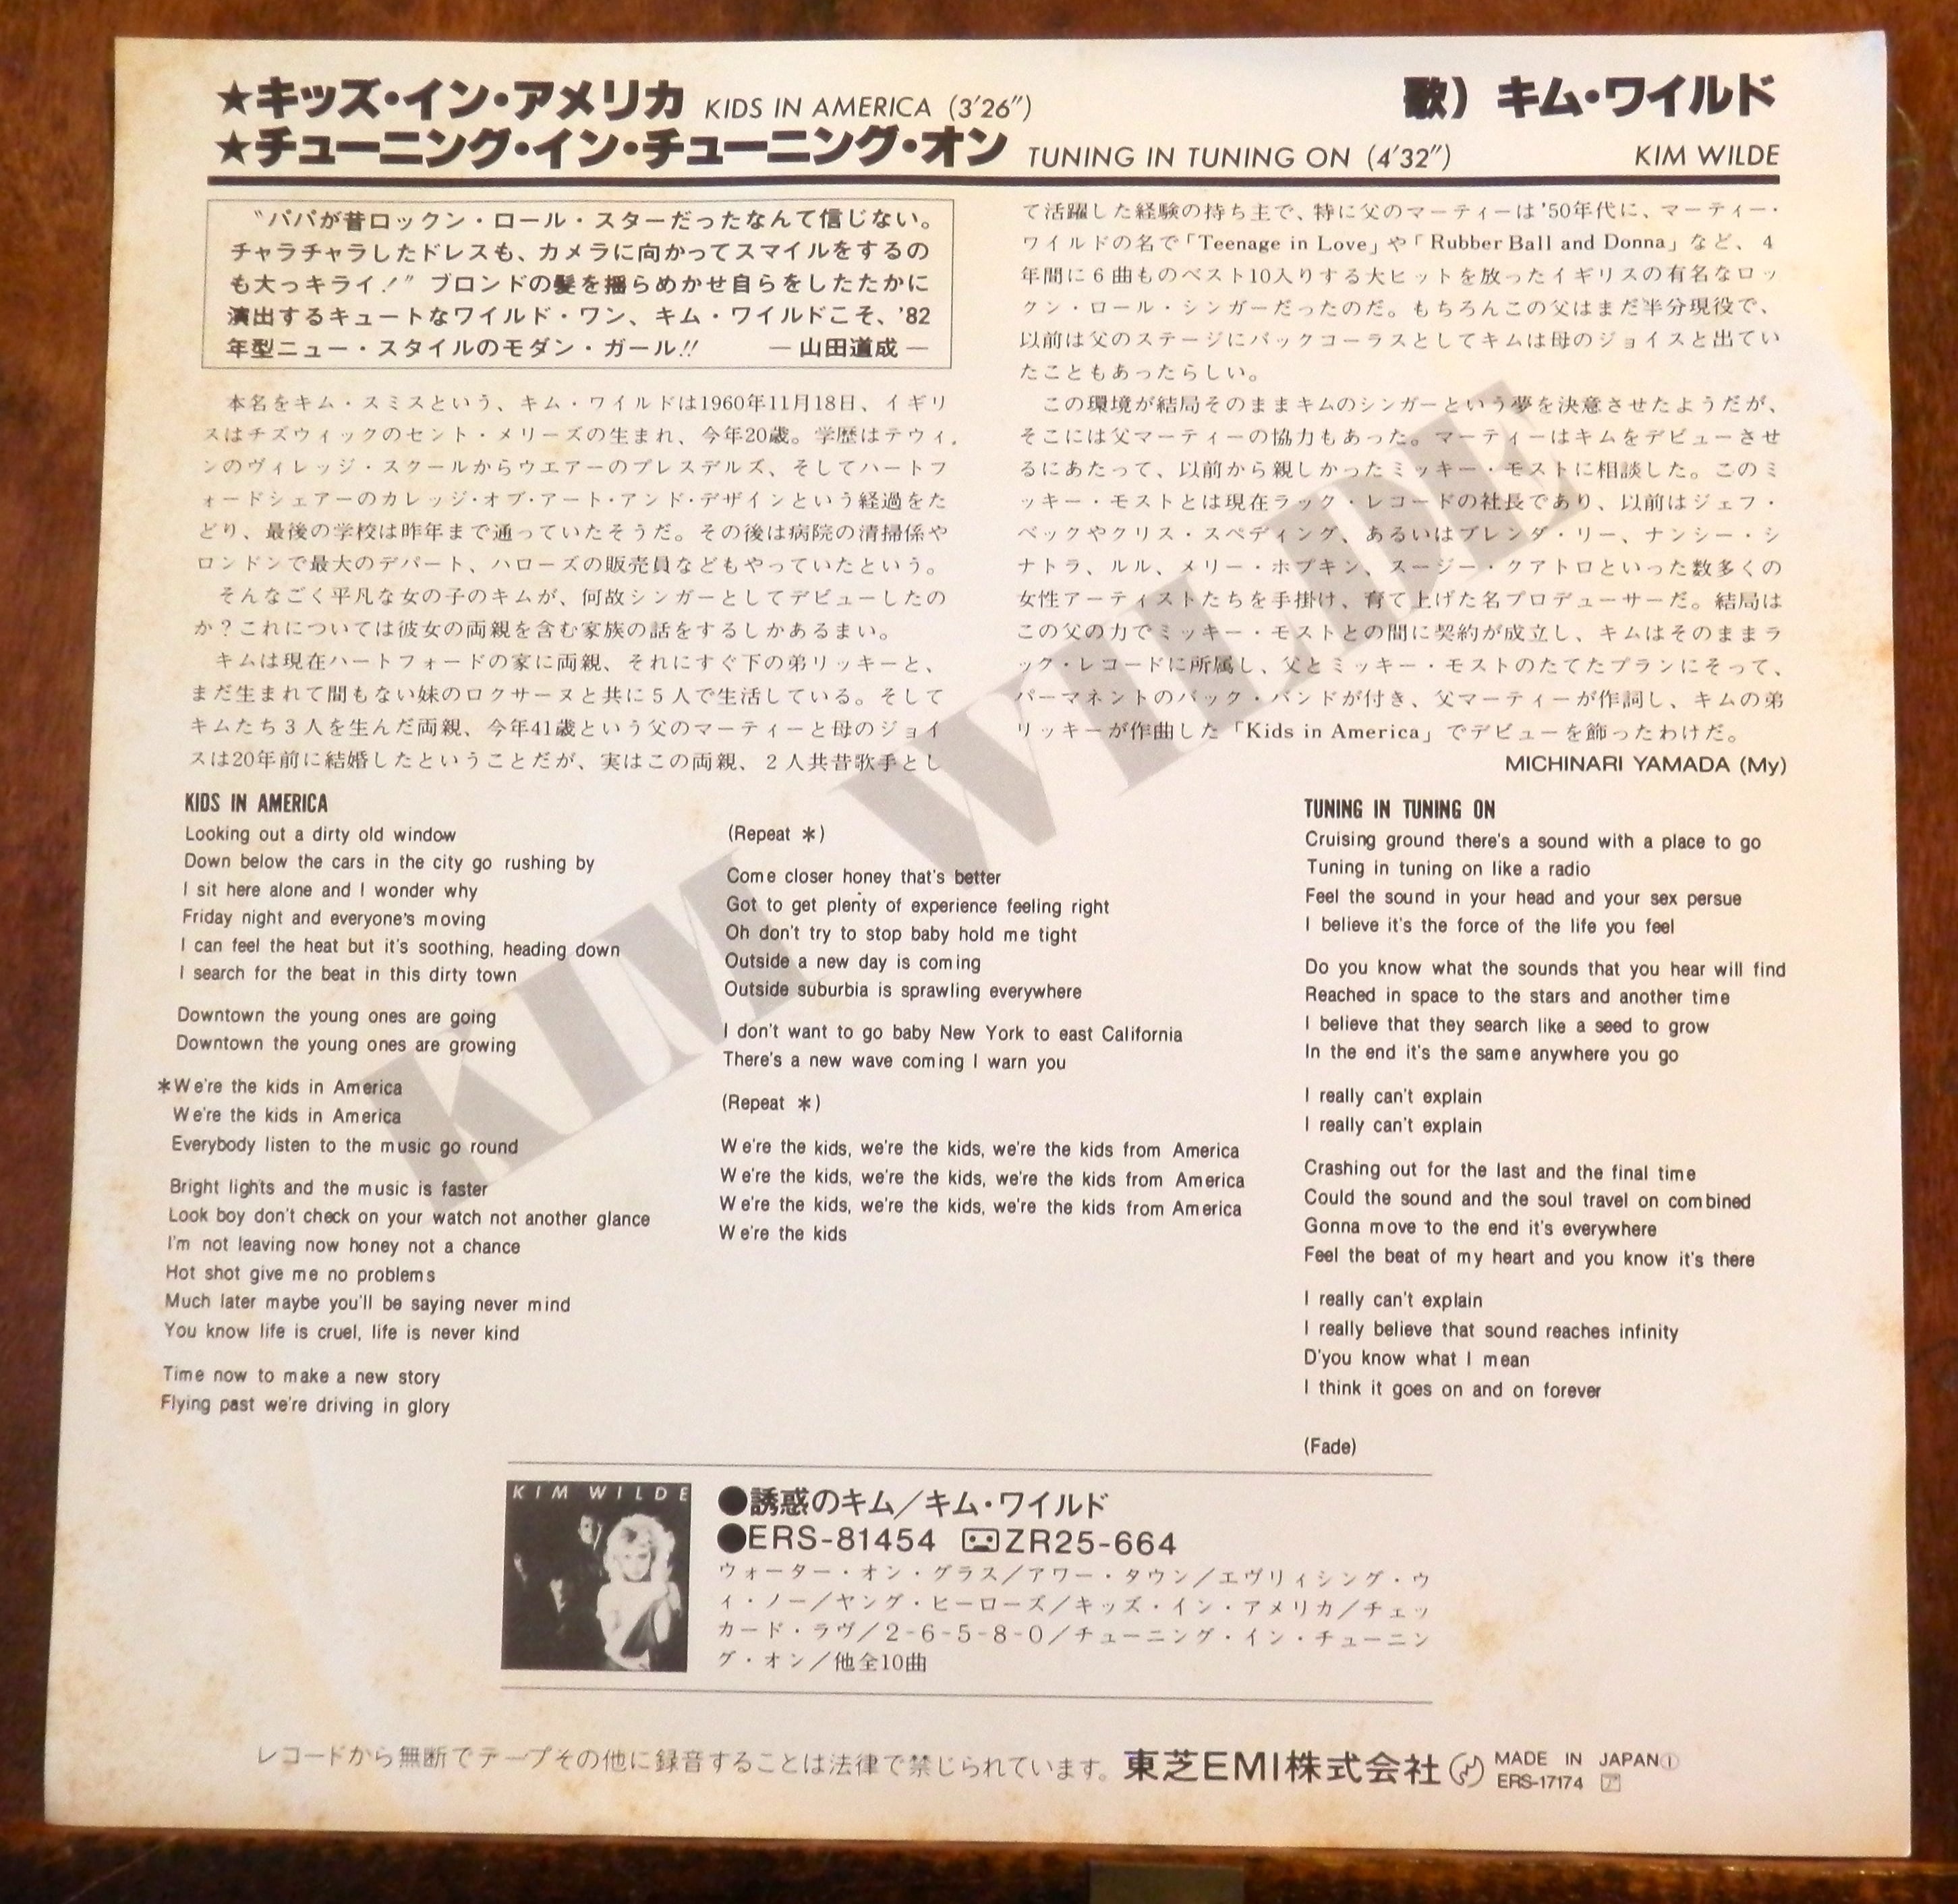 82【EP】キム・ワイルド キッズ・イン・アメリカ 音盤窟レコード